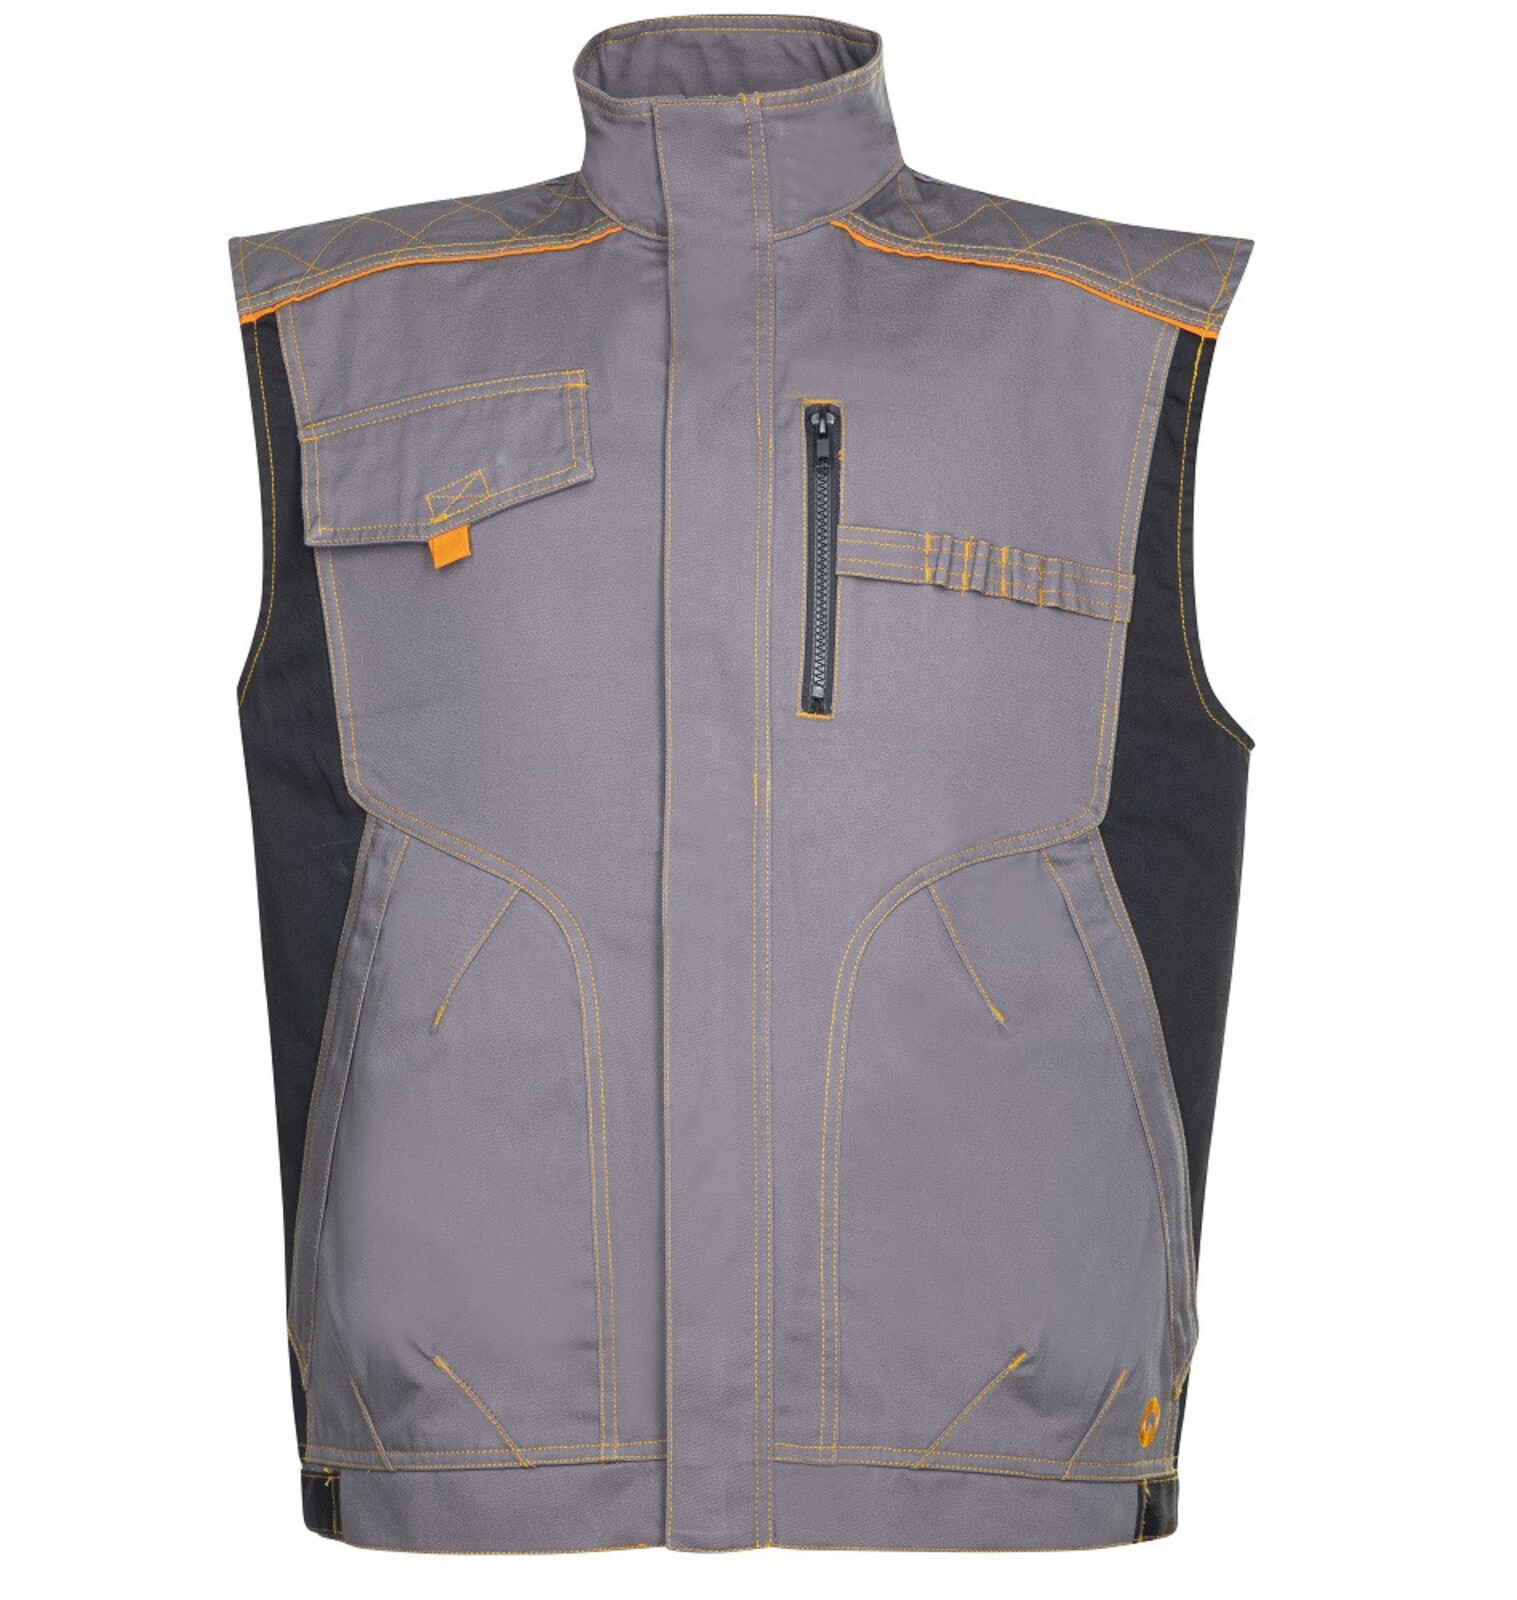 Pánska montérková vesta Ardon Vision - veľkosť: 52, farba: sivá/oranžová